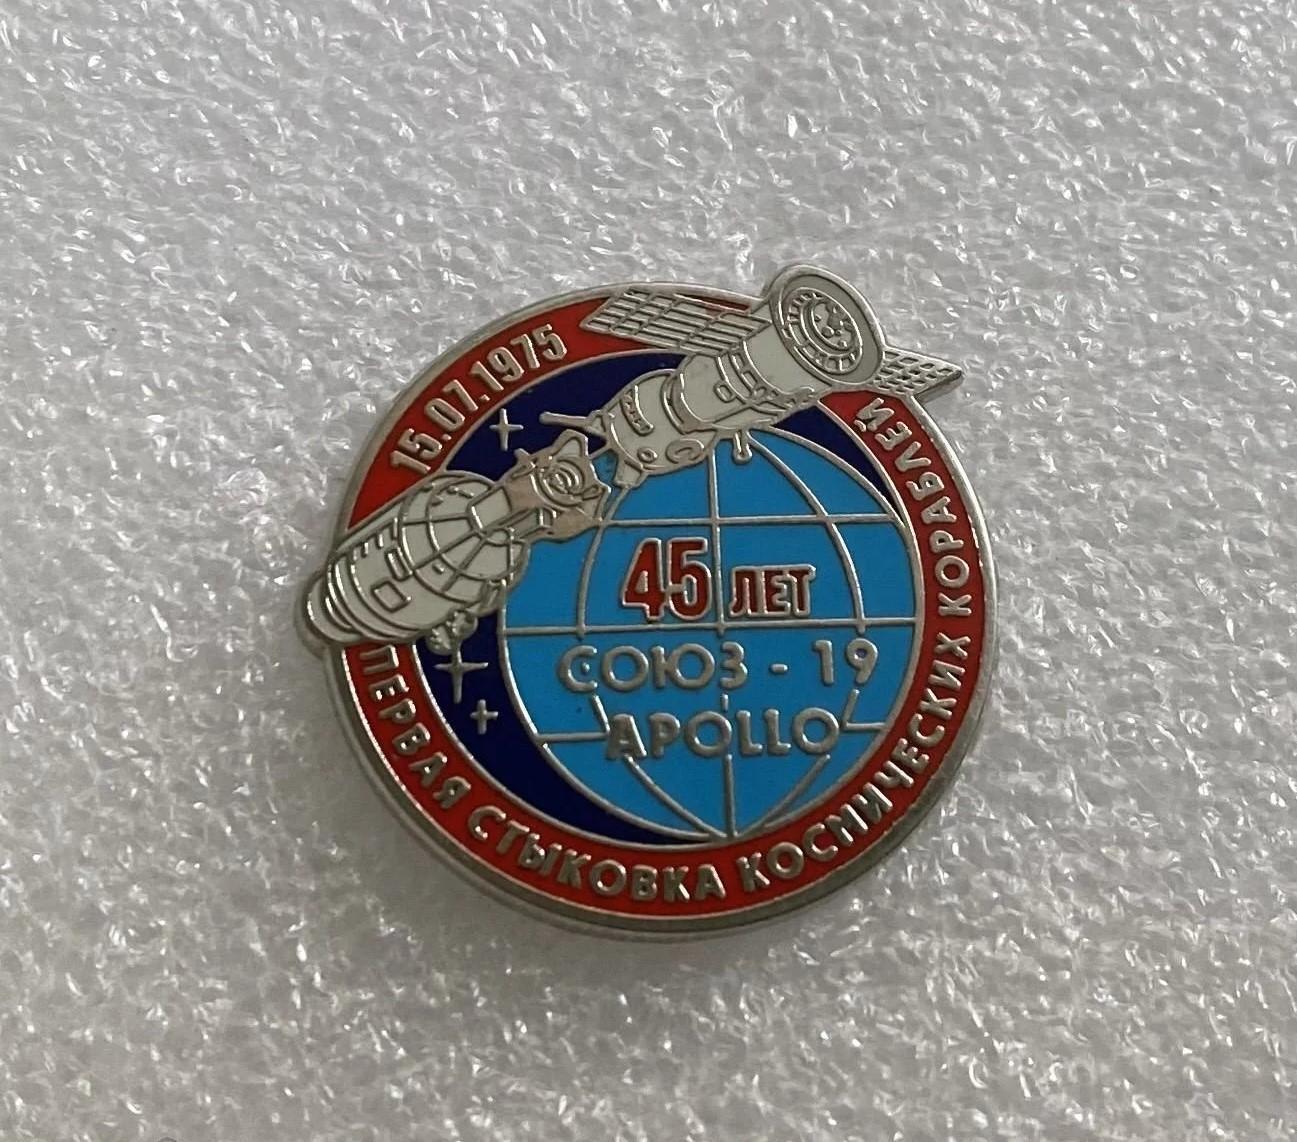 Космос 1975 Союз Аполлон 45 лет, значок ПОСЛЕДНИЙ